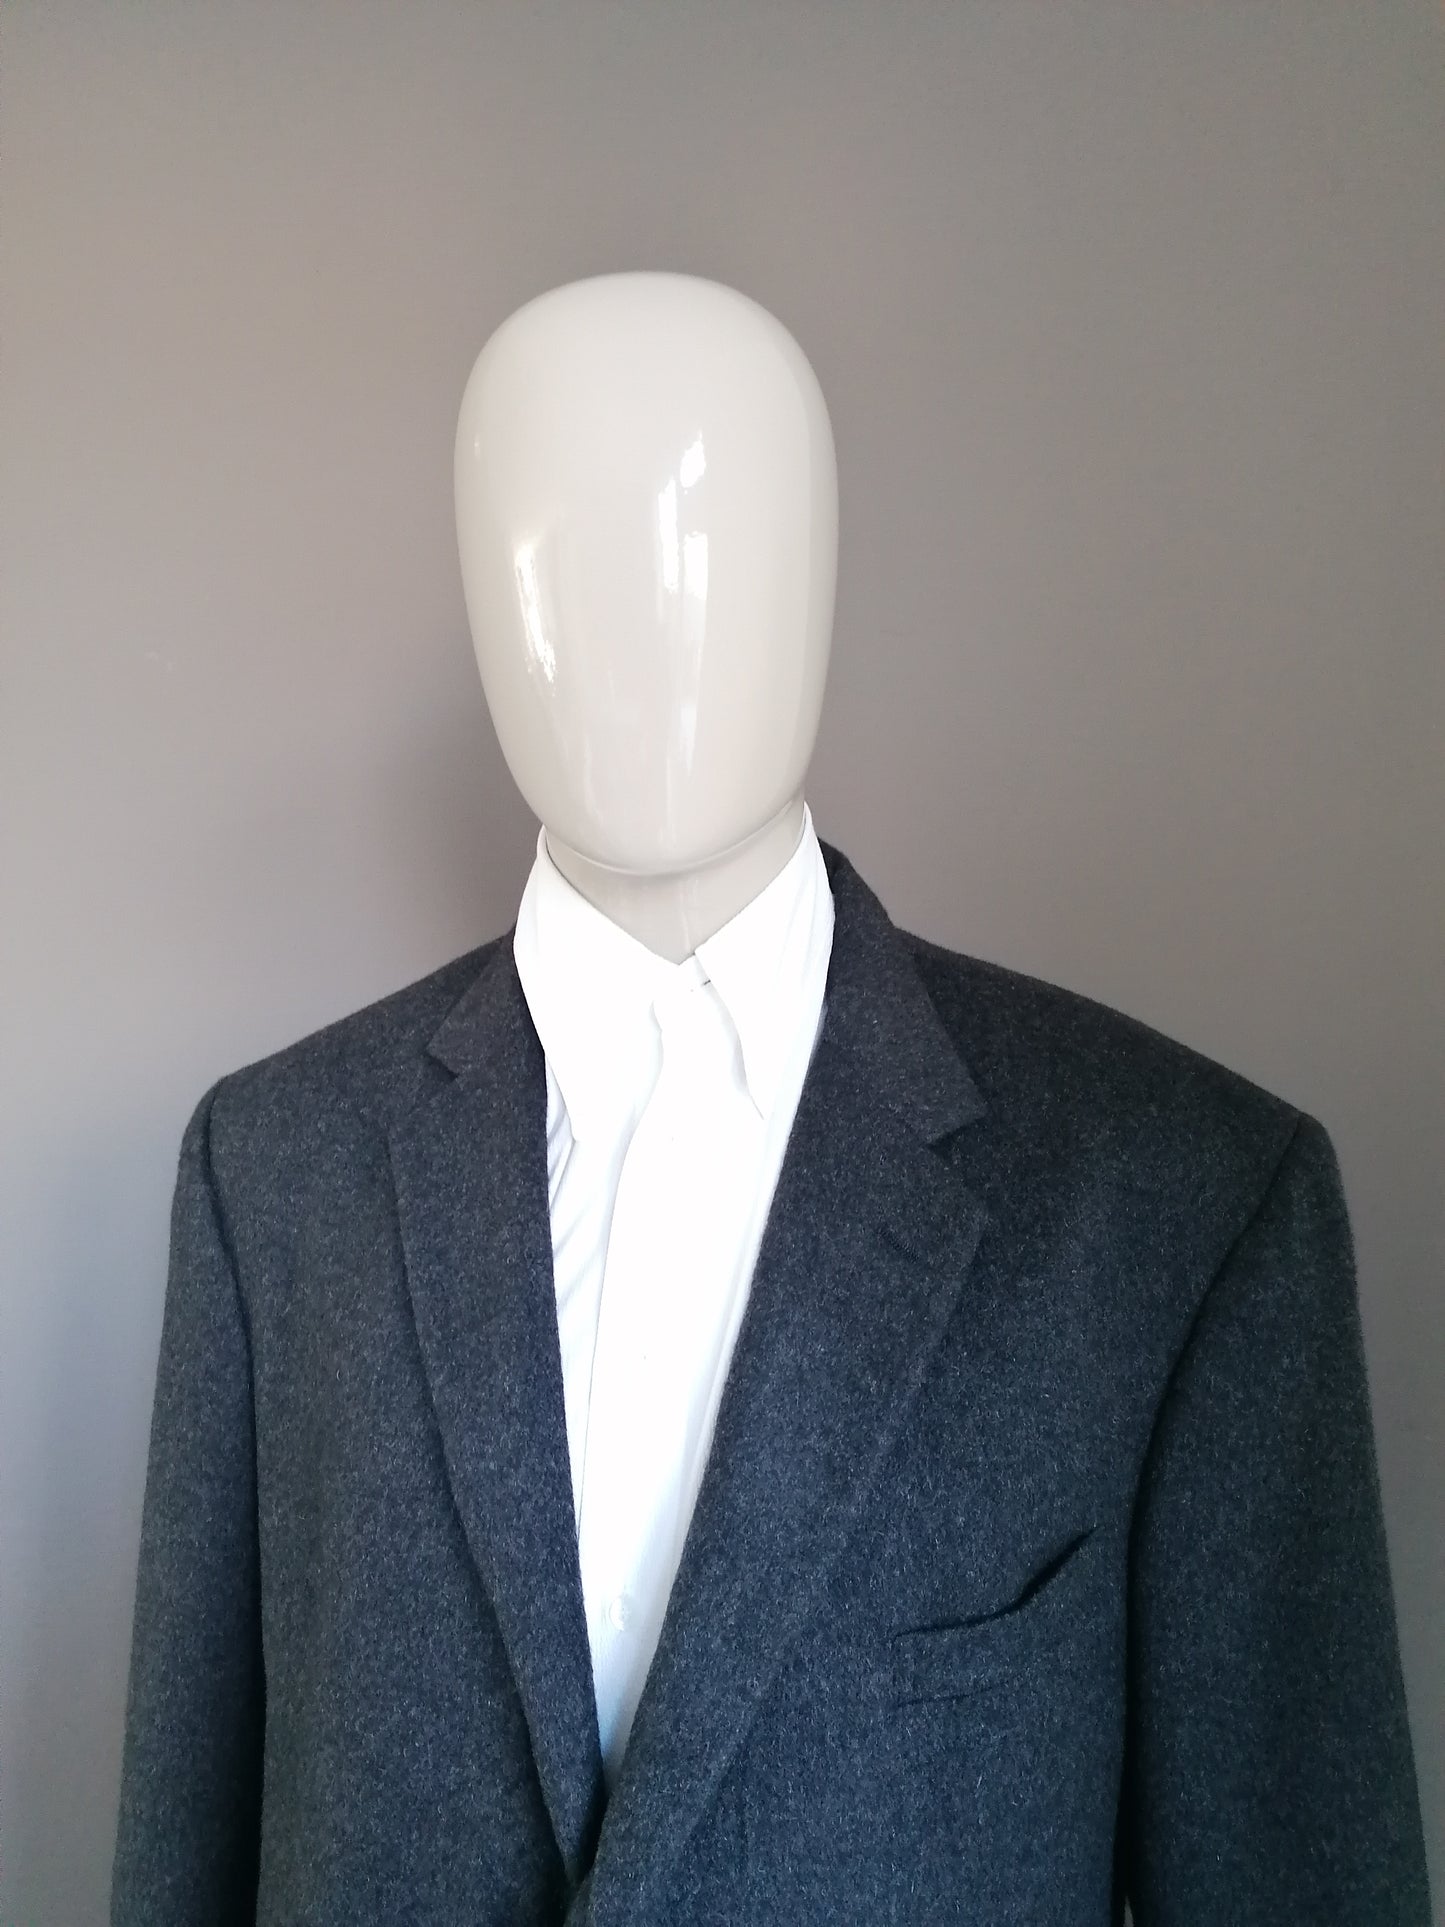 Polo de Ralph Lauren Laine Jacket. Gris foncé de couleur. Taille 56 / XL.